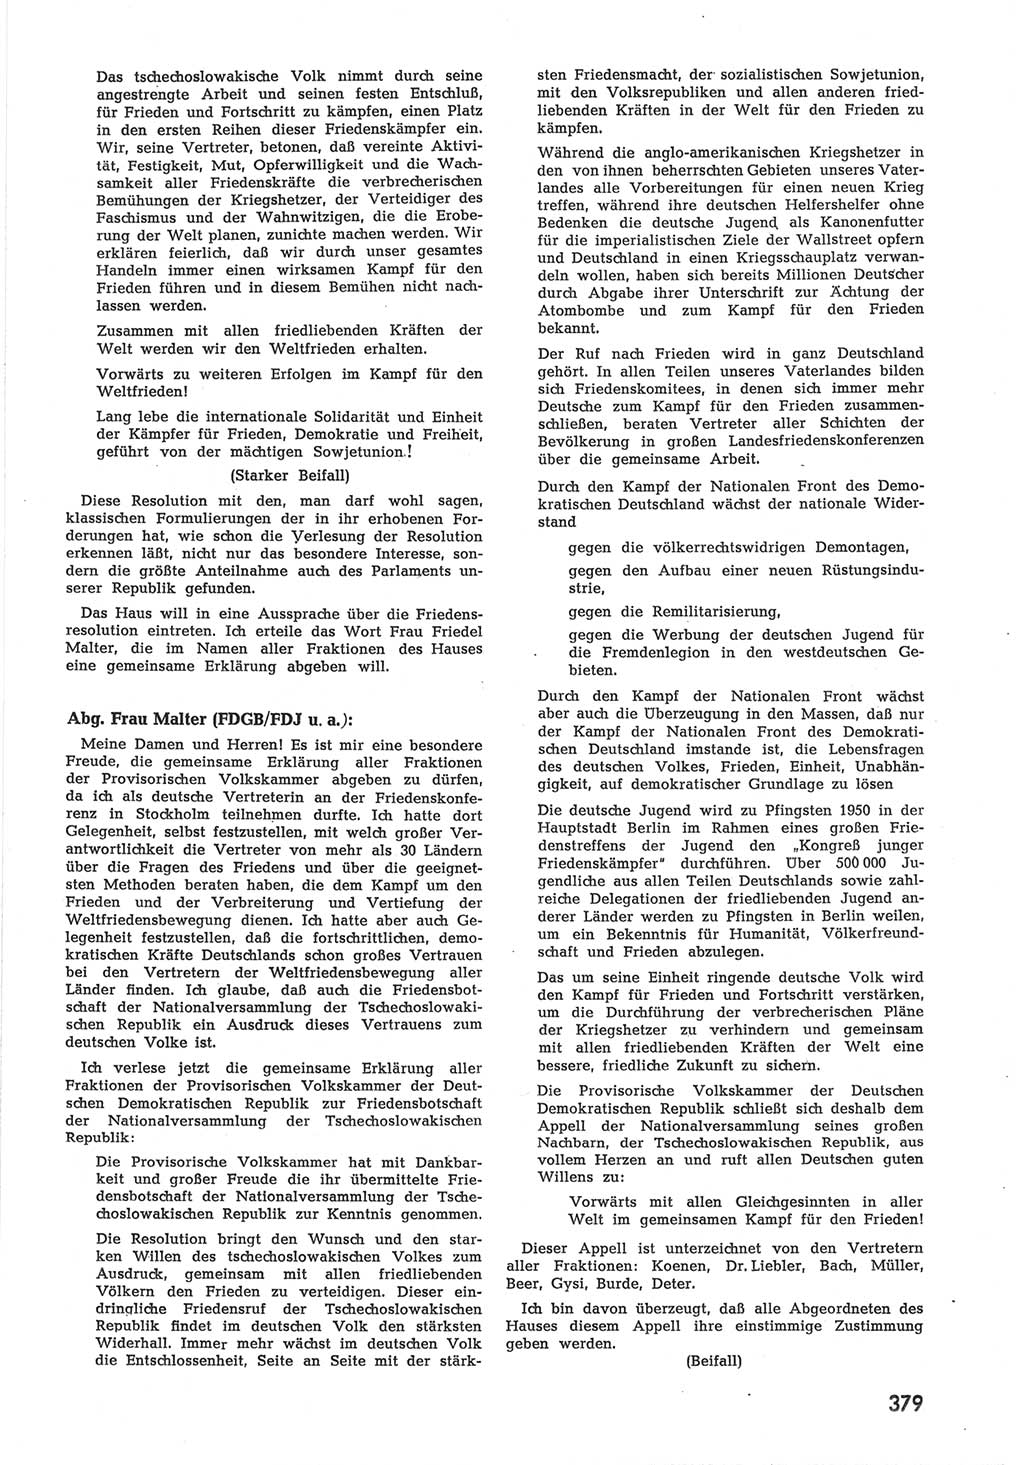 Provisorische Volkskammer (VK) der Deutschen Demokratischen Republik (DDR) 1949-1950, Dokument 397 (Prov. VK DDR 1949-1950, Dok. 397)